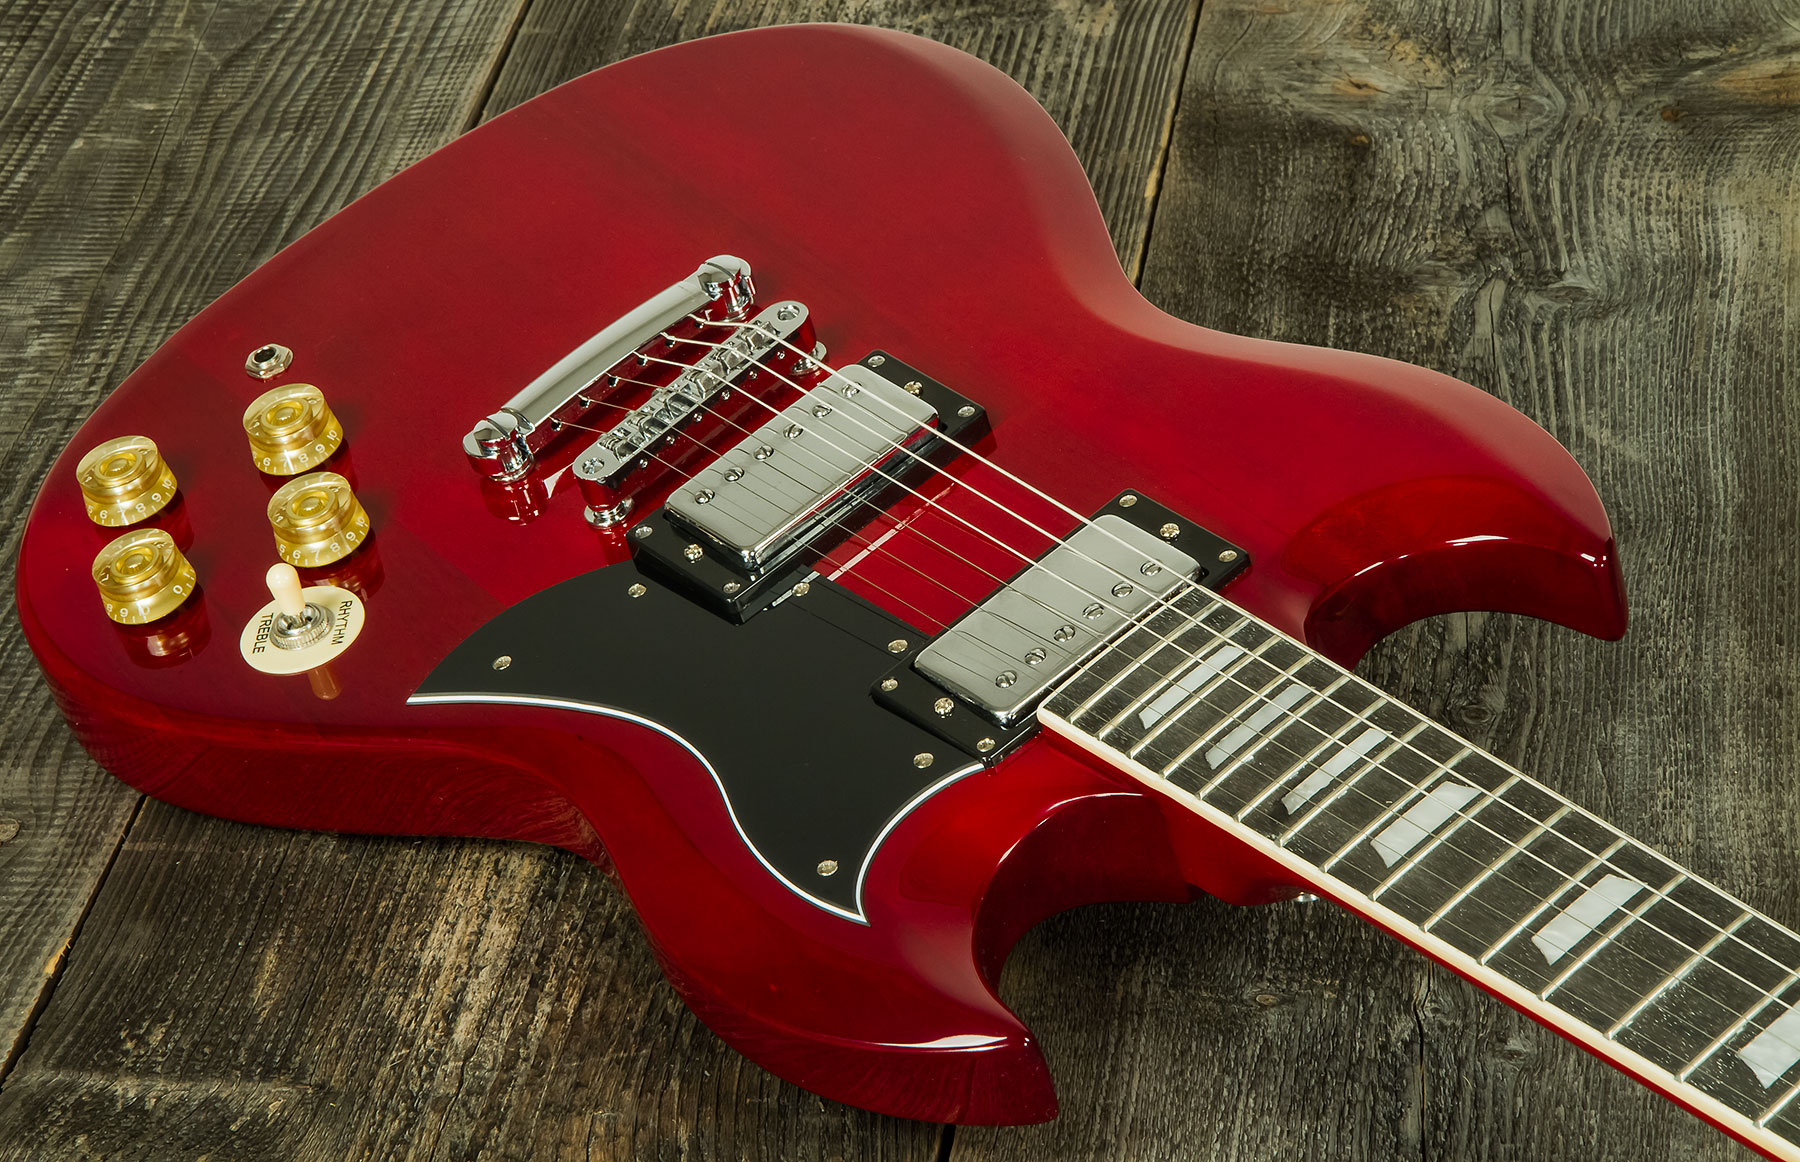 Eastone Sdc70 Hh Ht Pur - Red - Guitarra eléctrica de doble corte - Variation 1